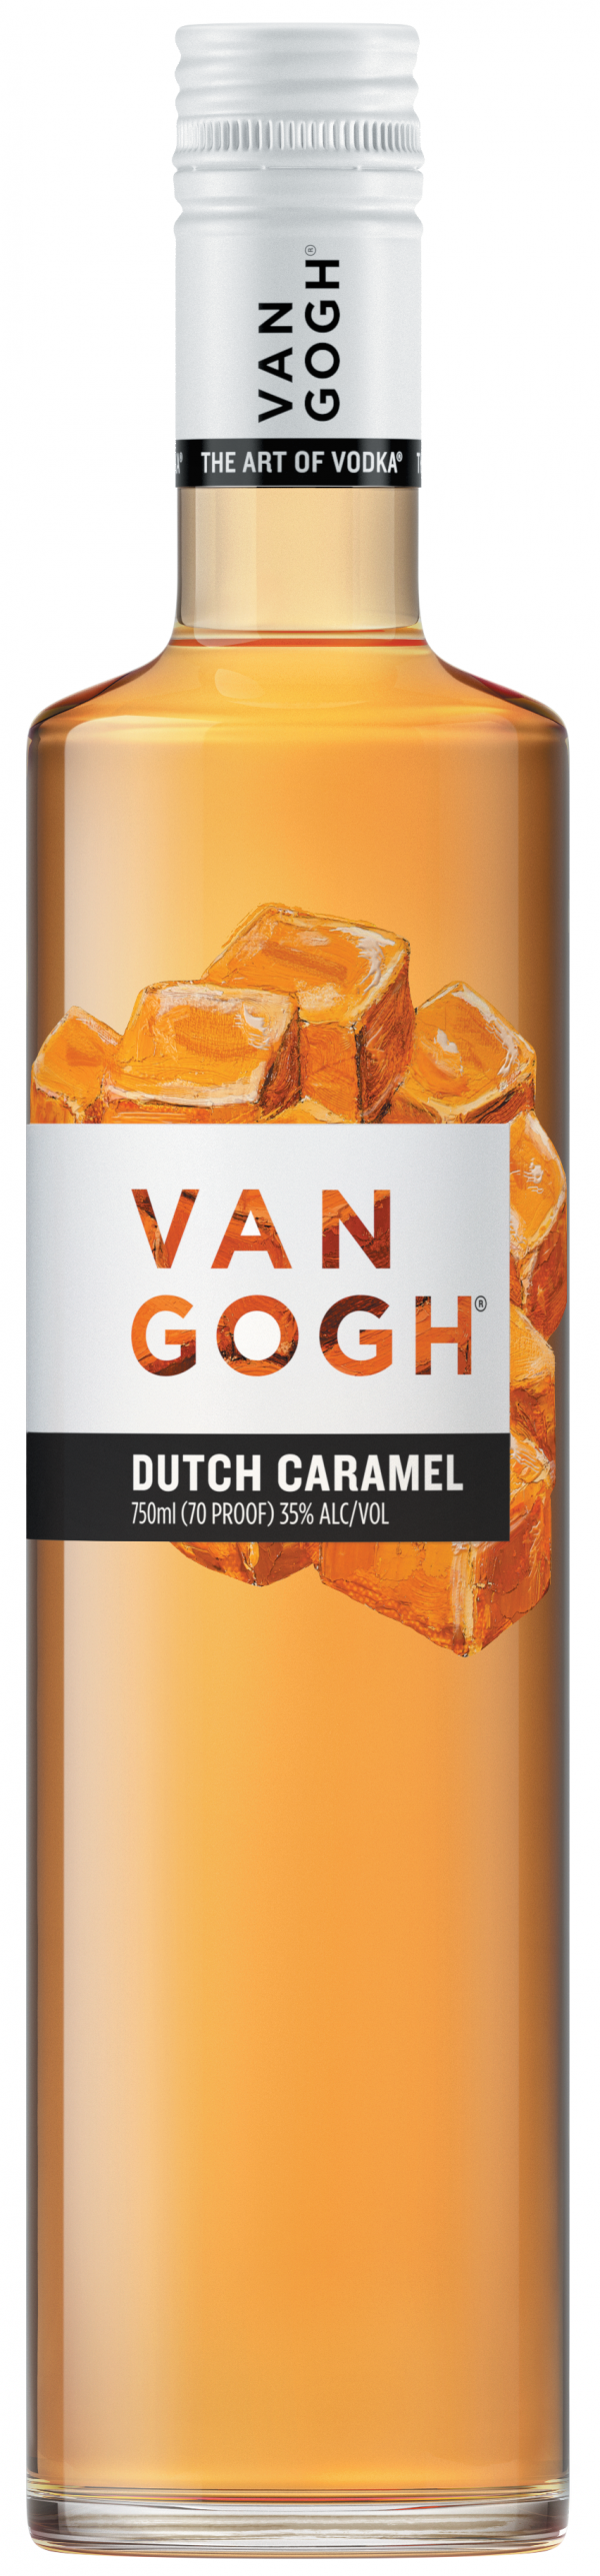 Van Gogh Vodka • Dutch Caramel